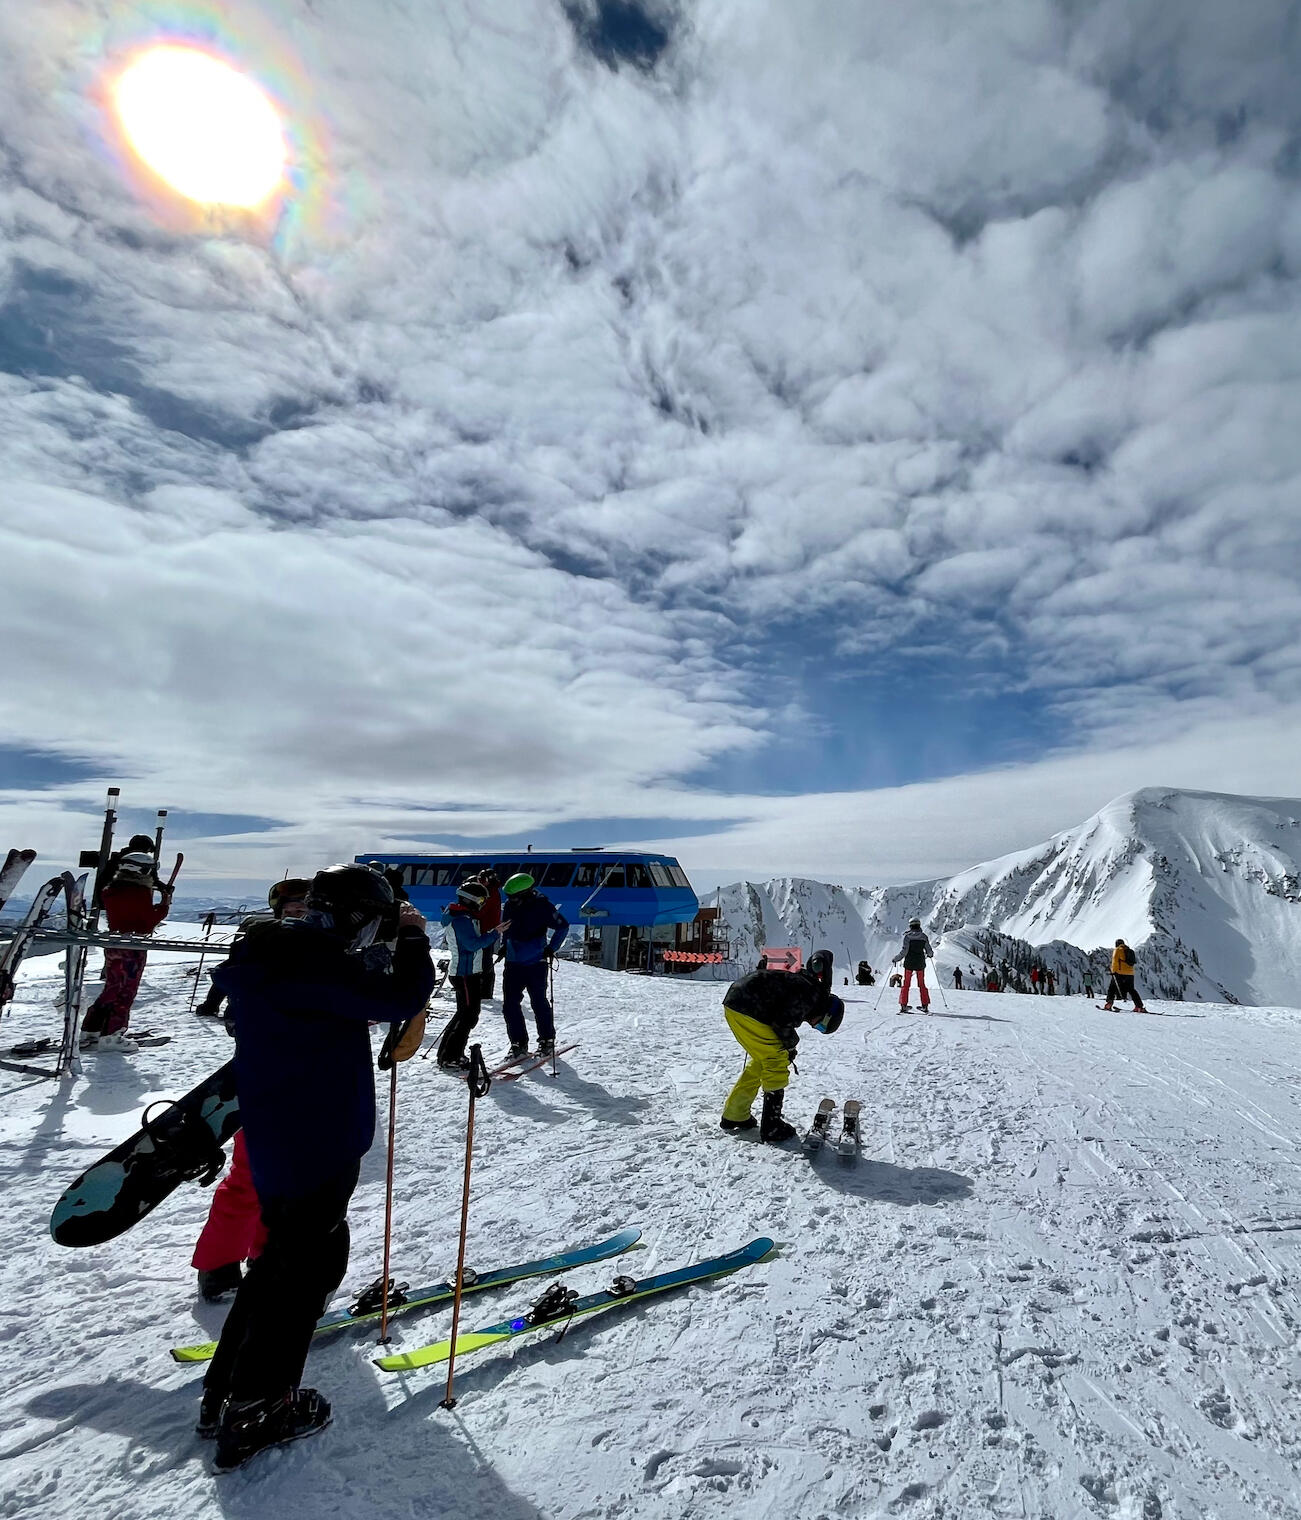 Ski mountain with skiers